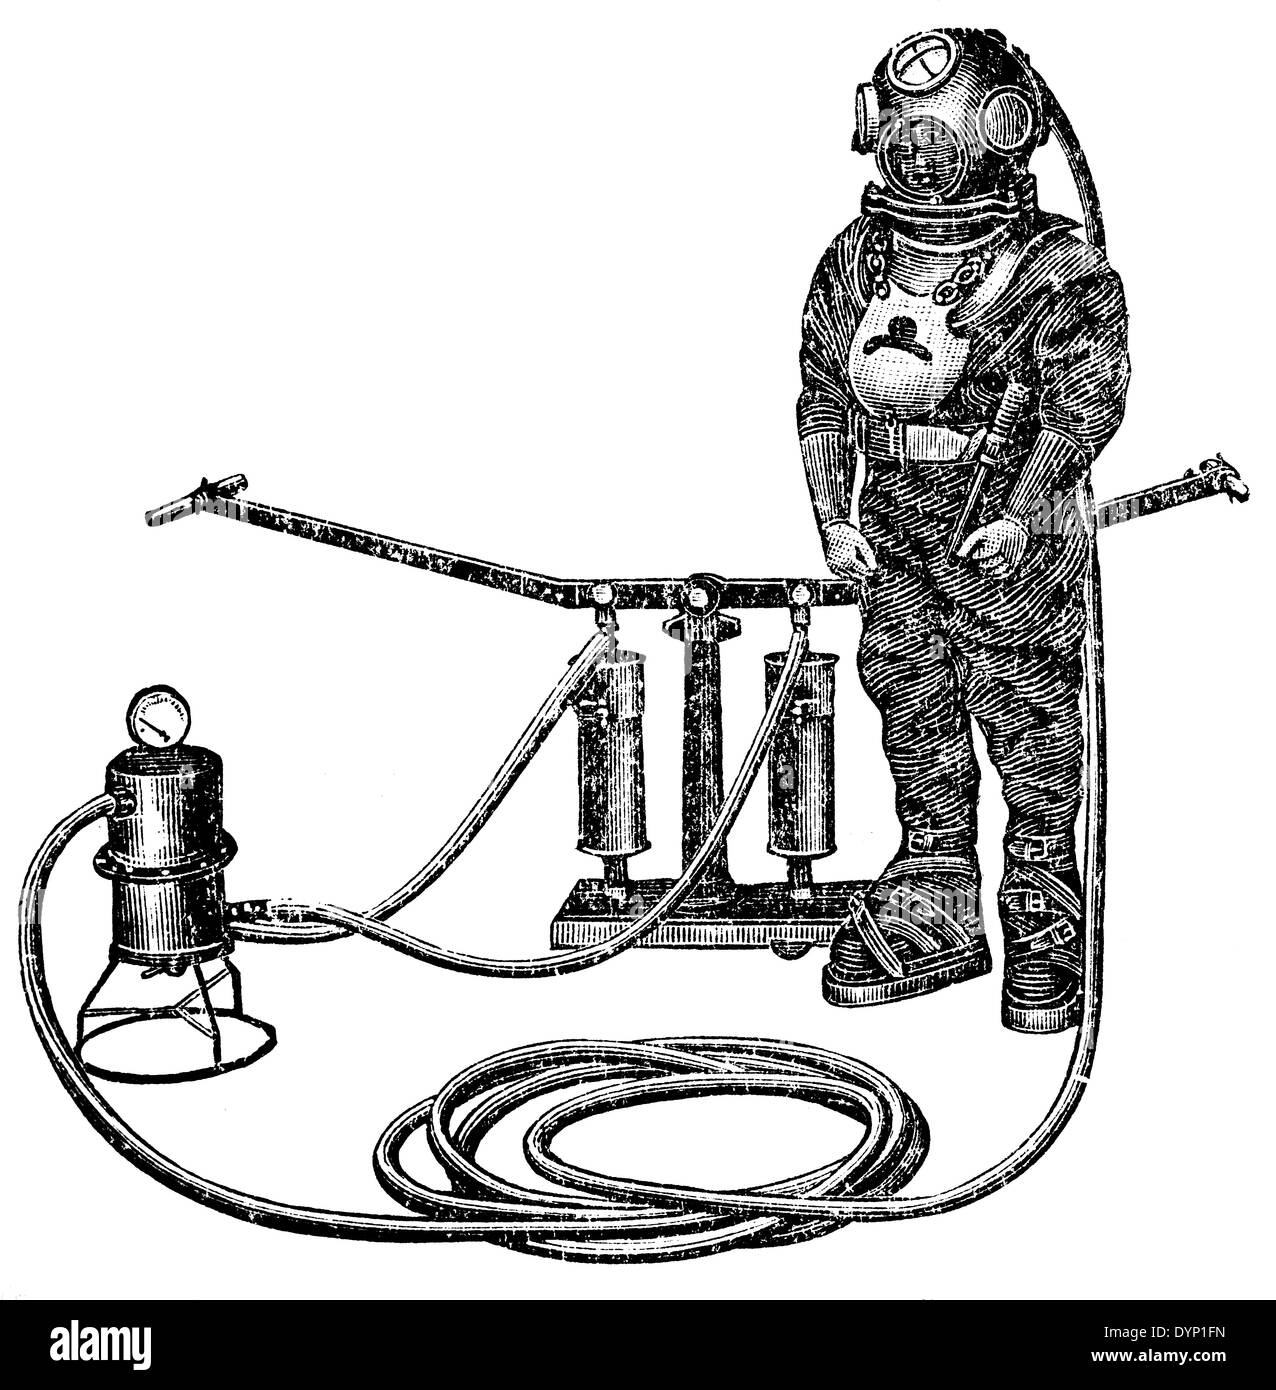 L'équipement de plongée vintage, illustration de l'Encyclopédie Soviétique, 1928 Banque D'Images